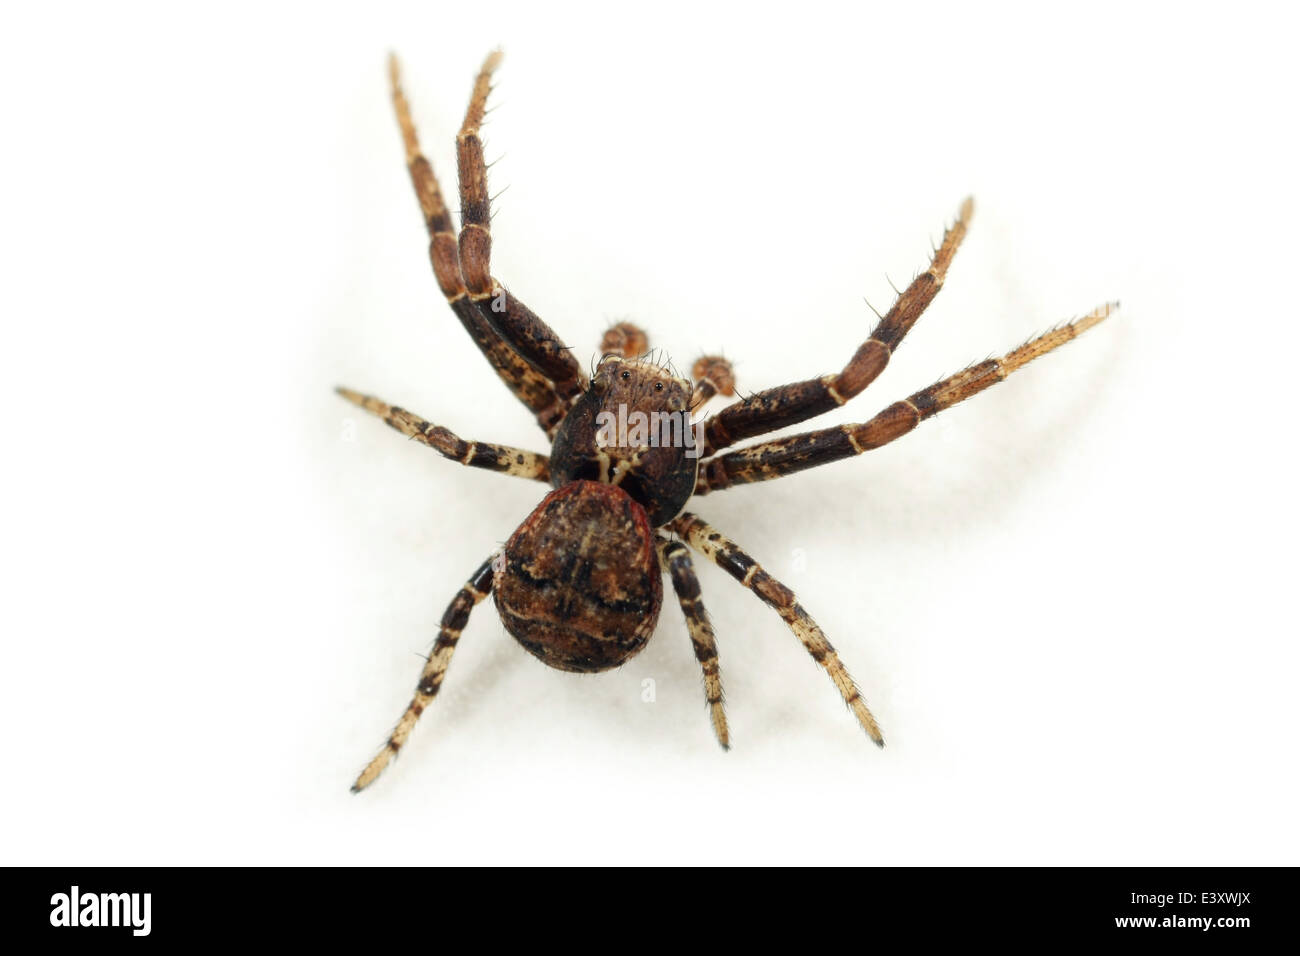 Männliche Xysticus Audax Spinne, Teil der Familie Thomisidae - Krabben Spinnen. Isoliert auf weißem Hintergrund. Stockfoto